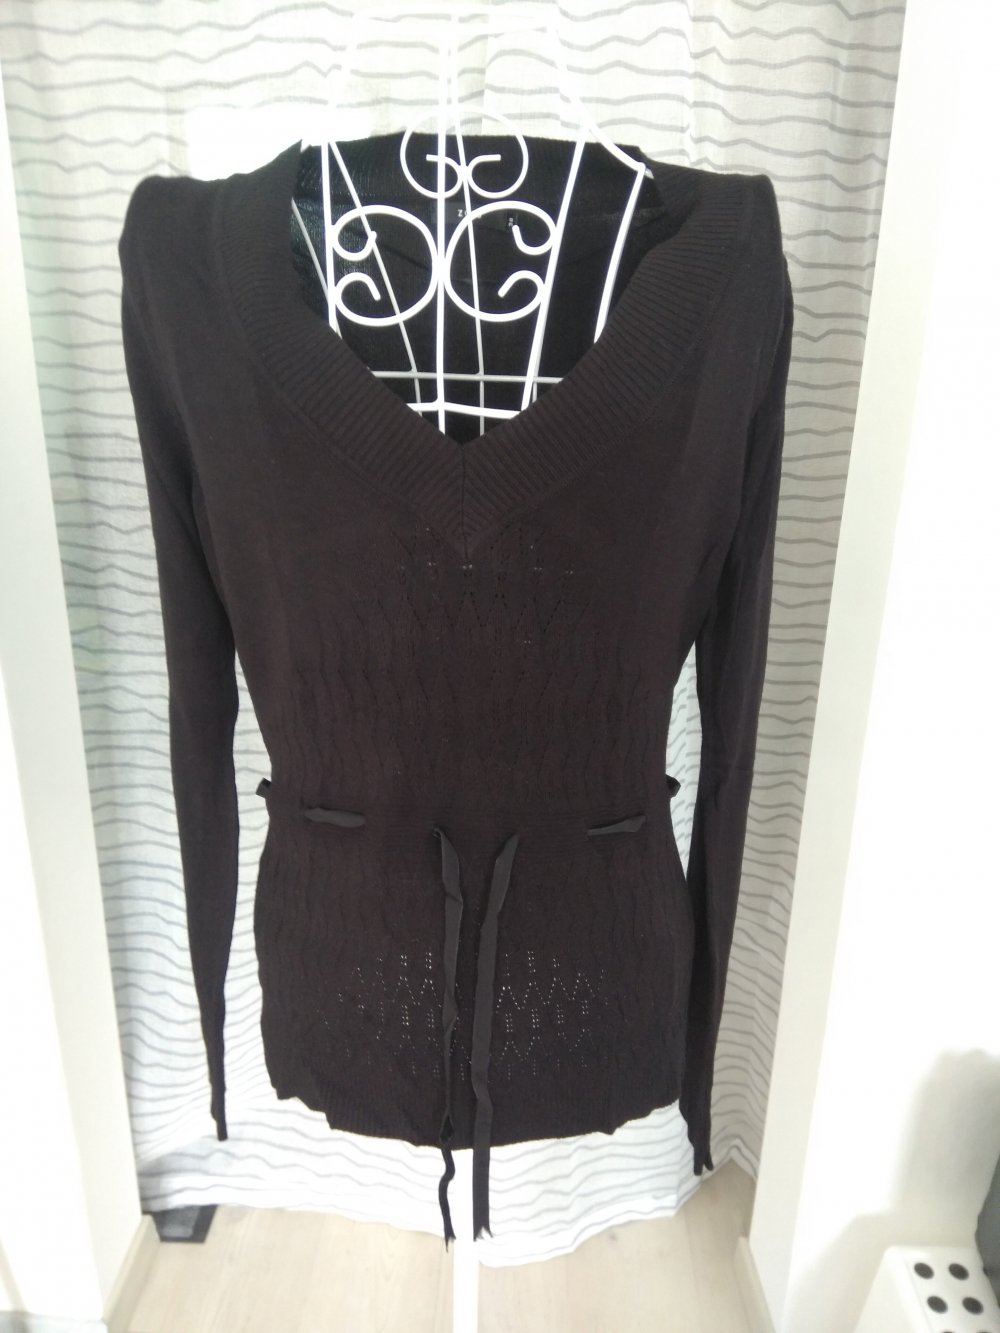 Dünner schwarzer Pullover mit V-Ausschnitt